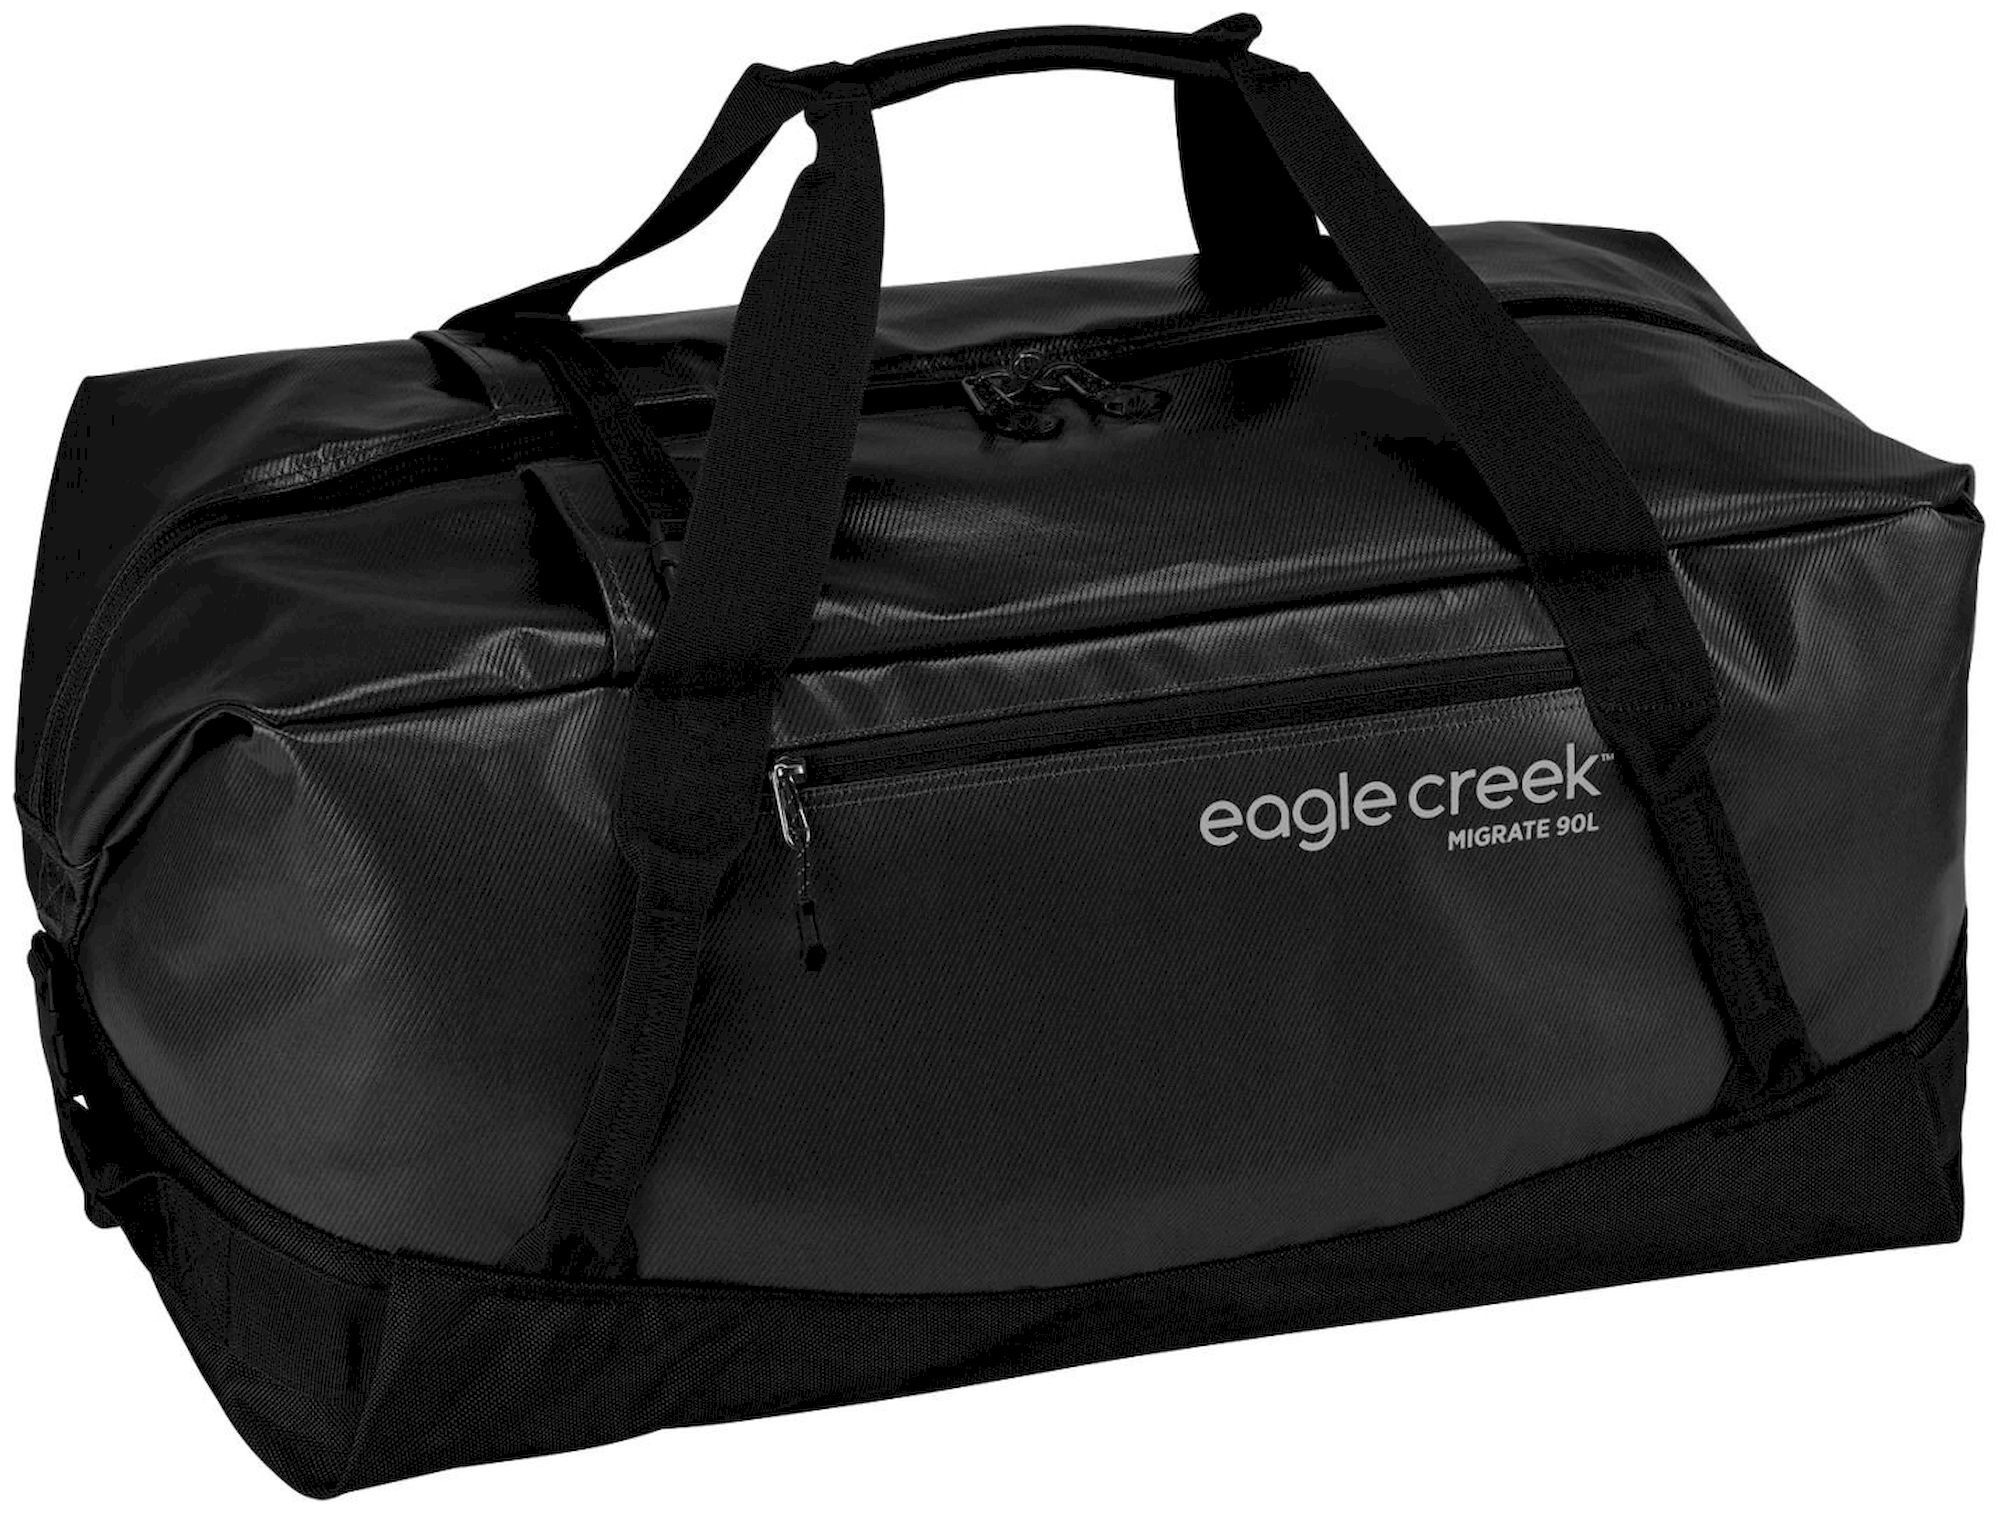 Eagle Creek Migrate Duffel 90L - Travel bag